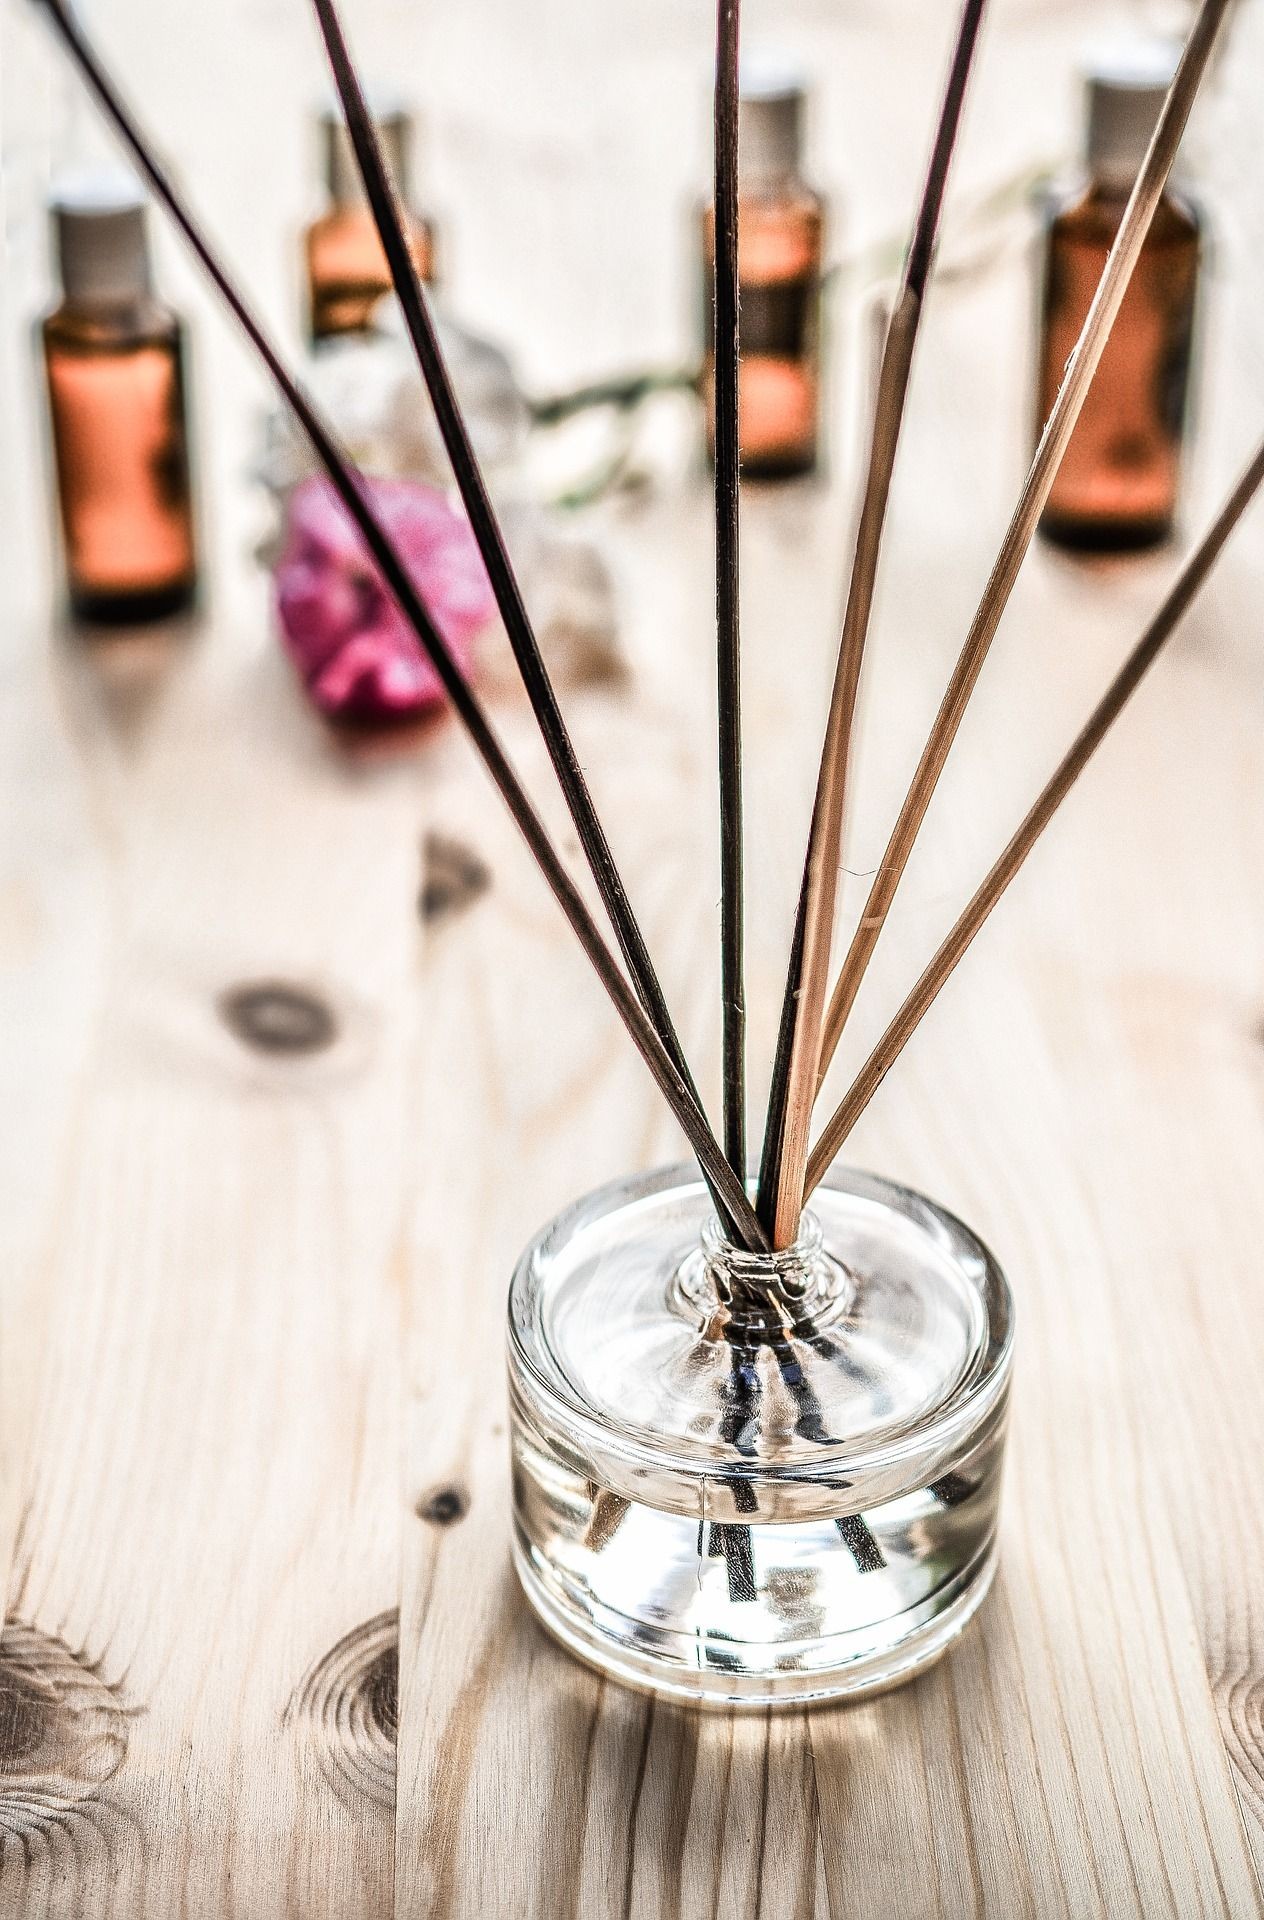 Difusor de aroma para ambientes pode ser feito com óleos essenciais (Foto: Pixabay/Monicore/CreativeCommons)